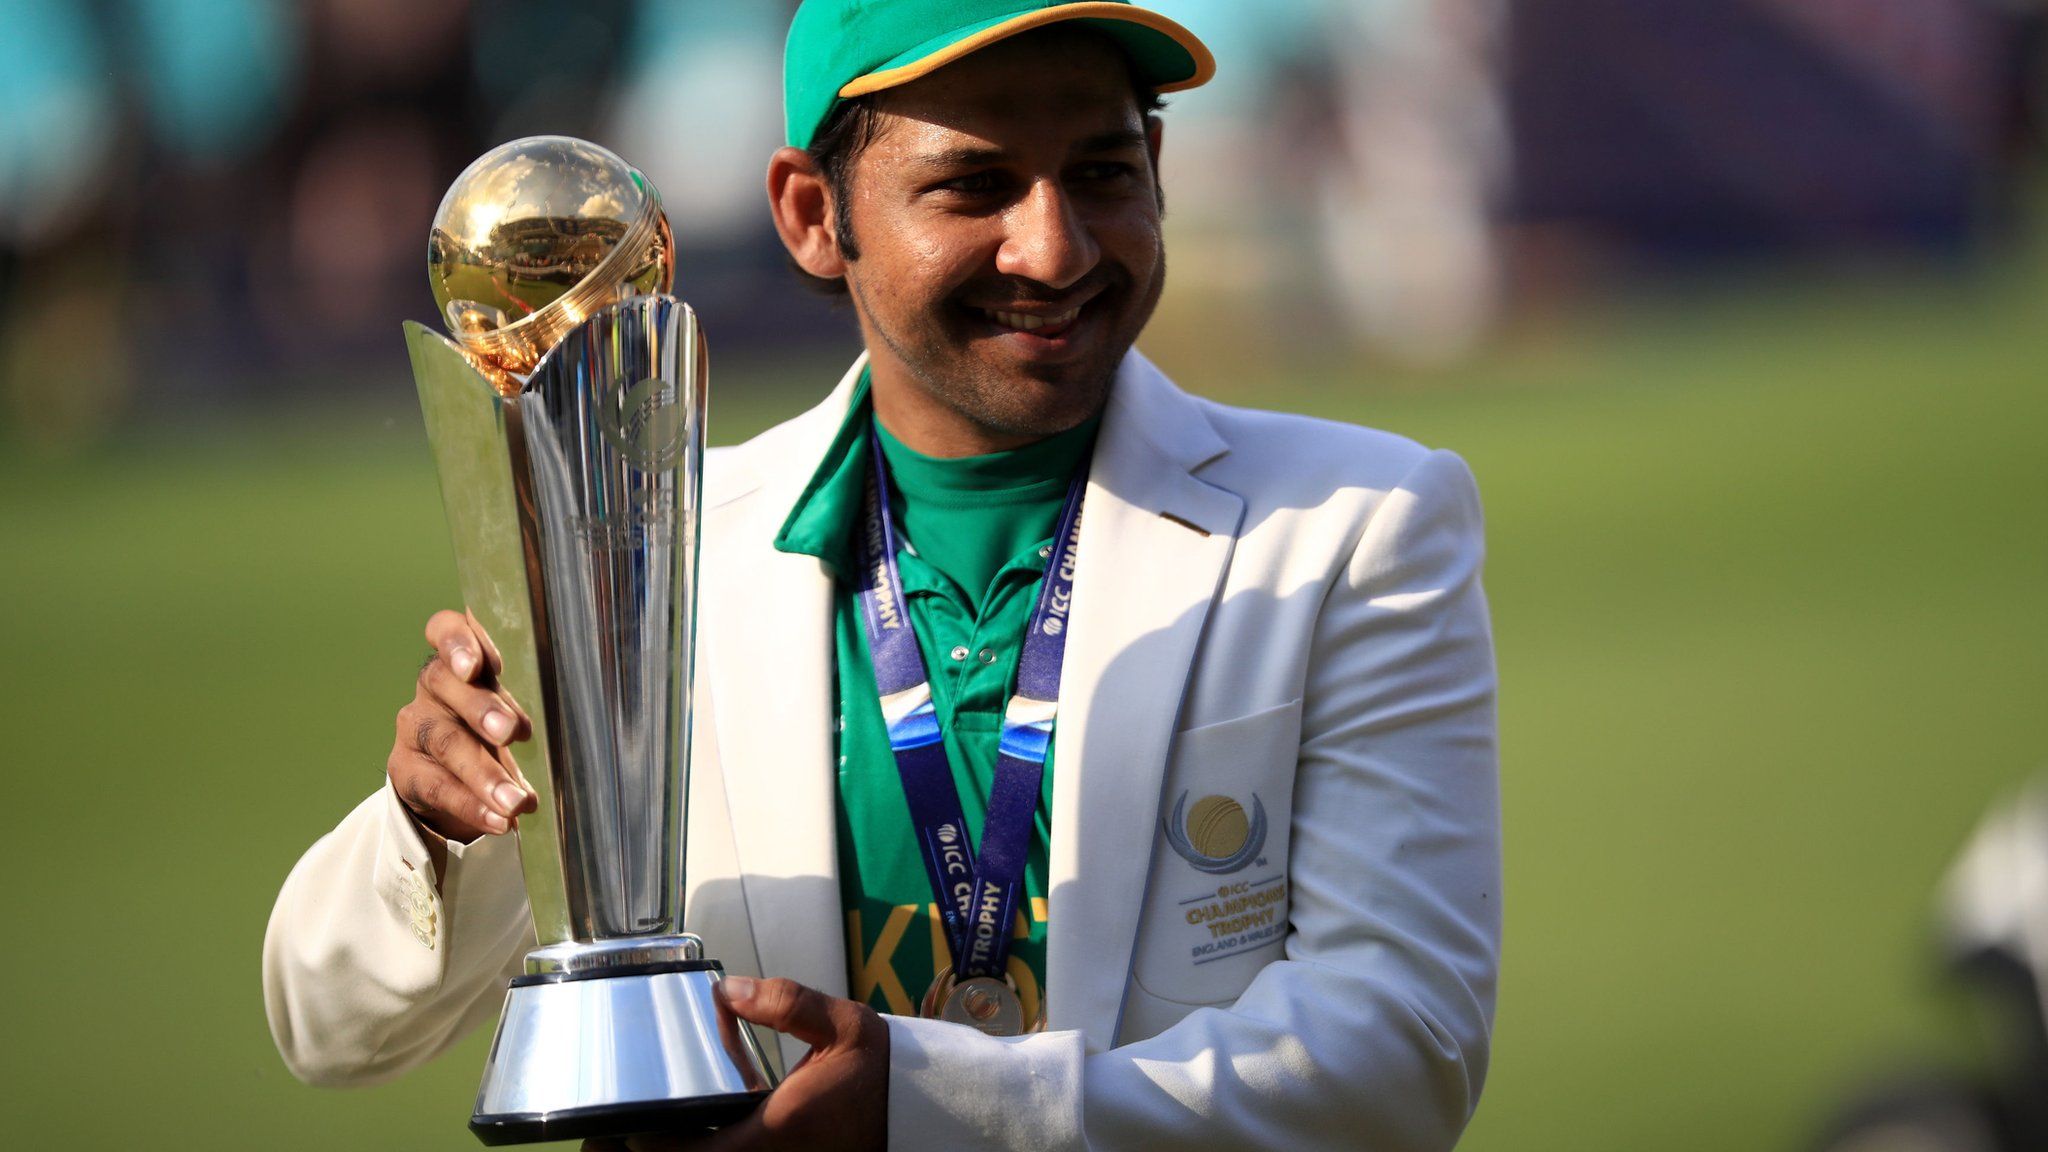 Pakistan ODI cricket captain Sarfraz Ahmed